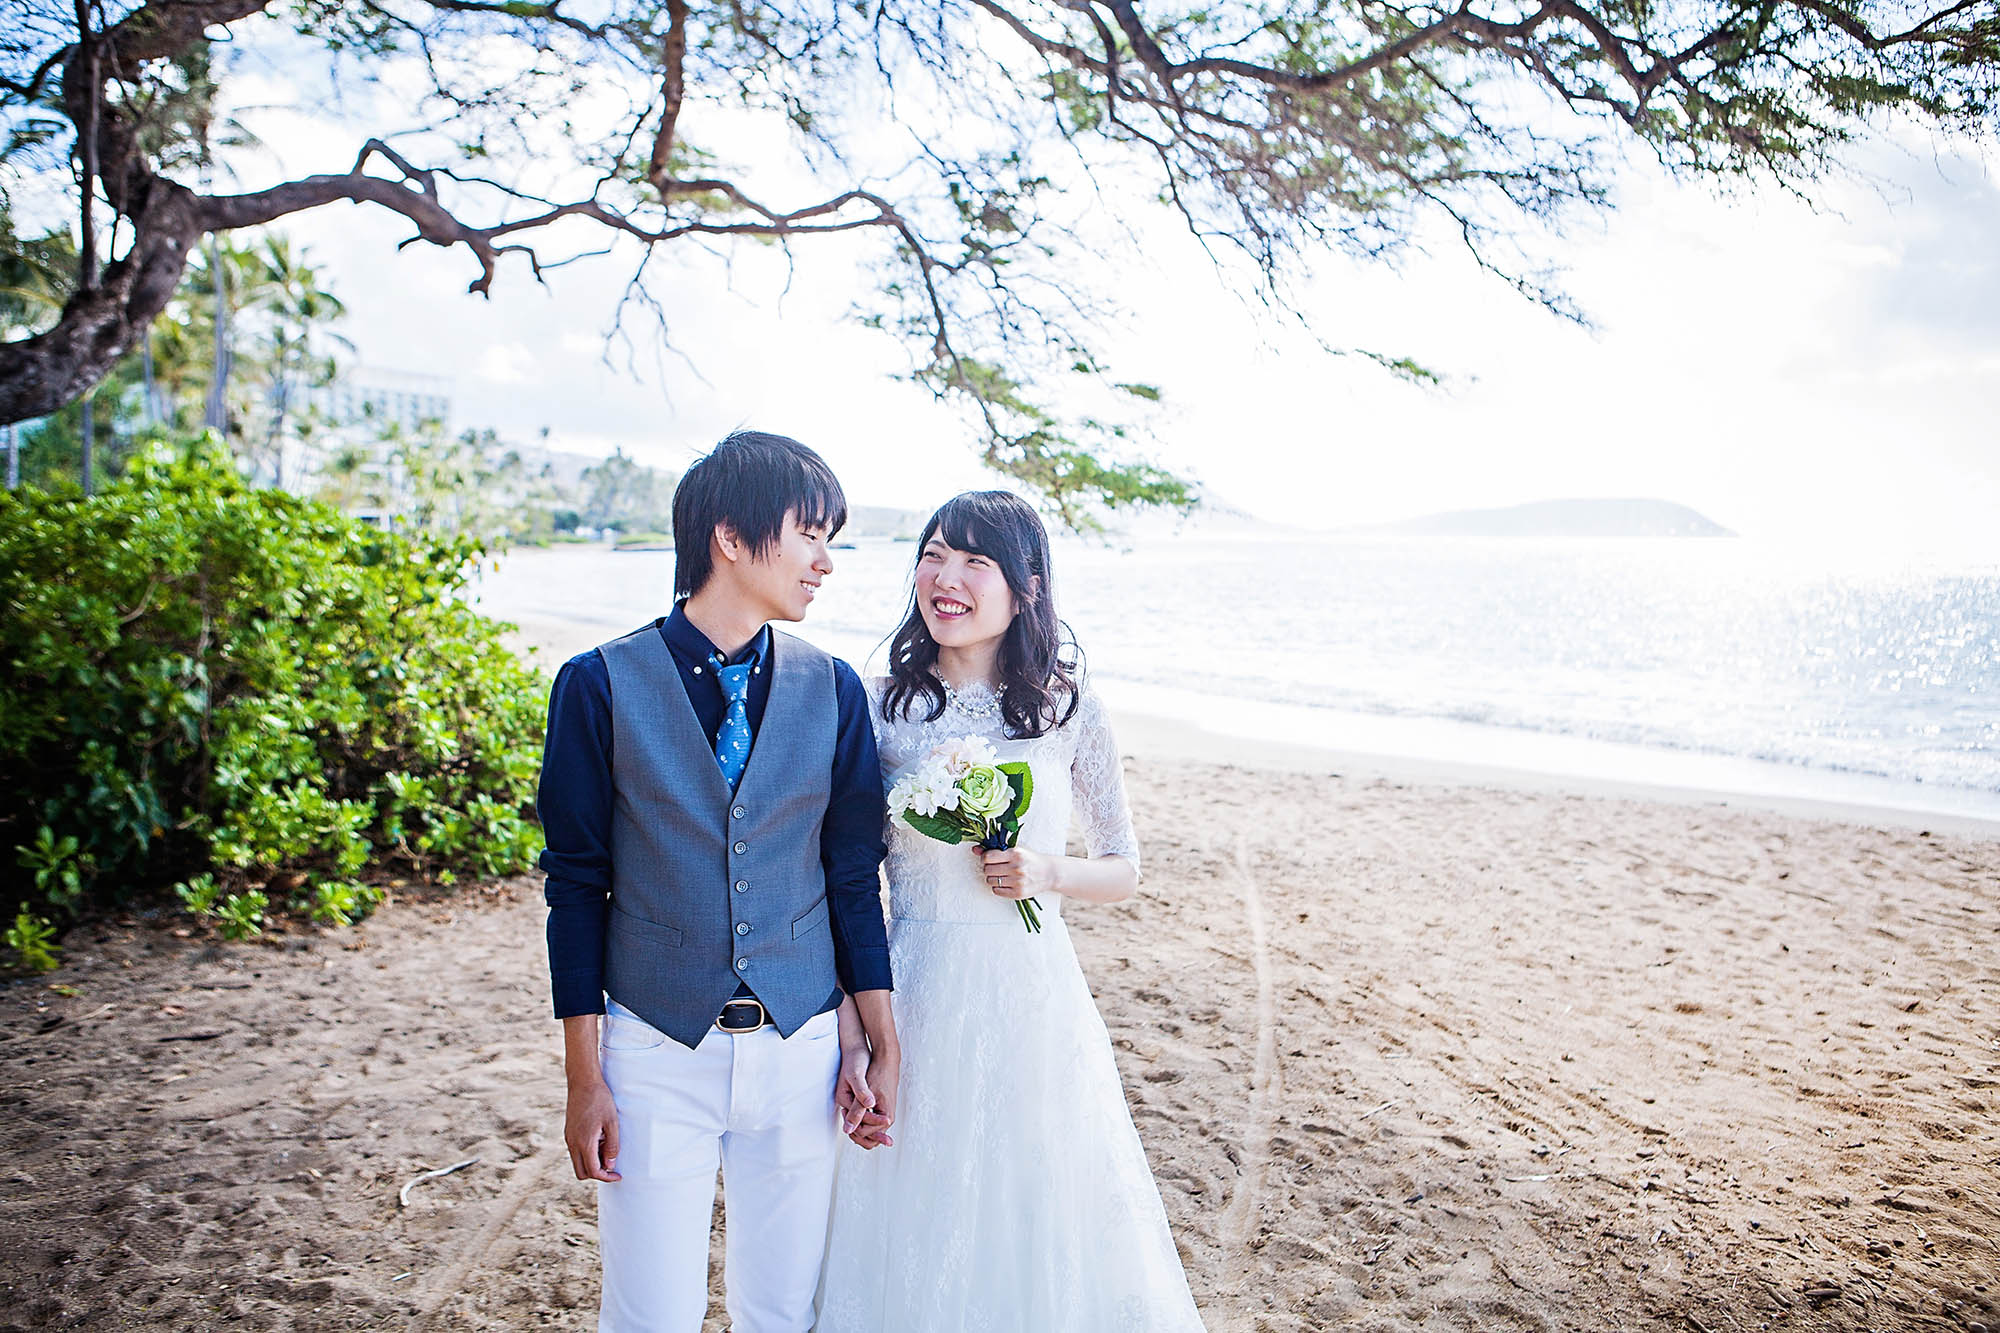 Honolulu wedding photography